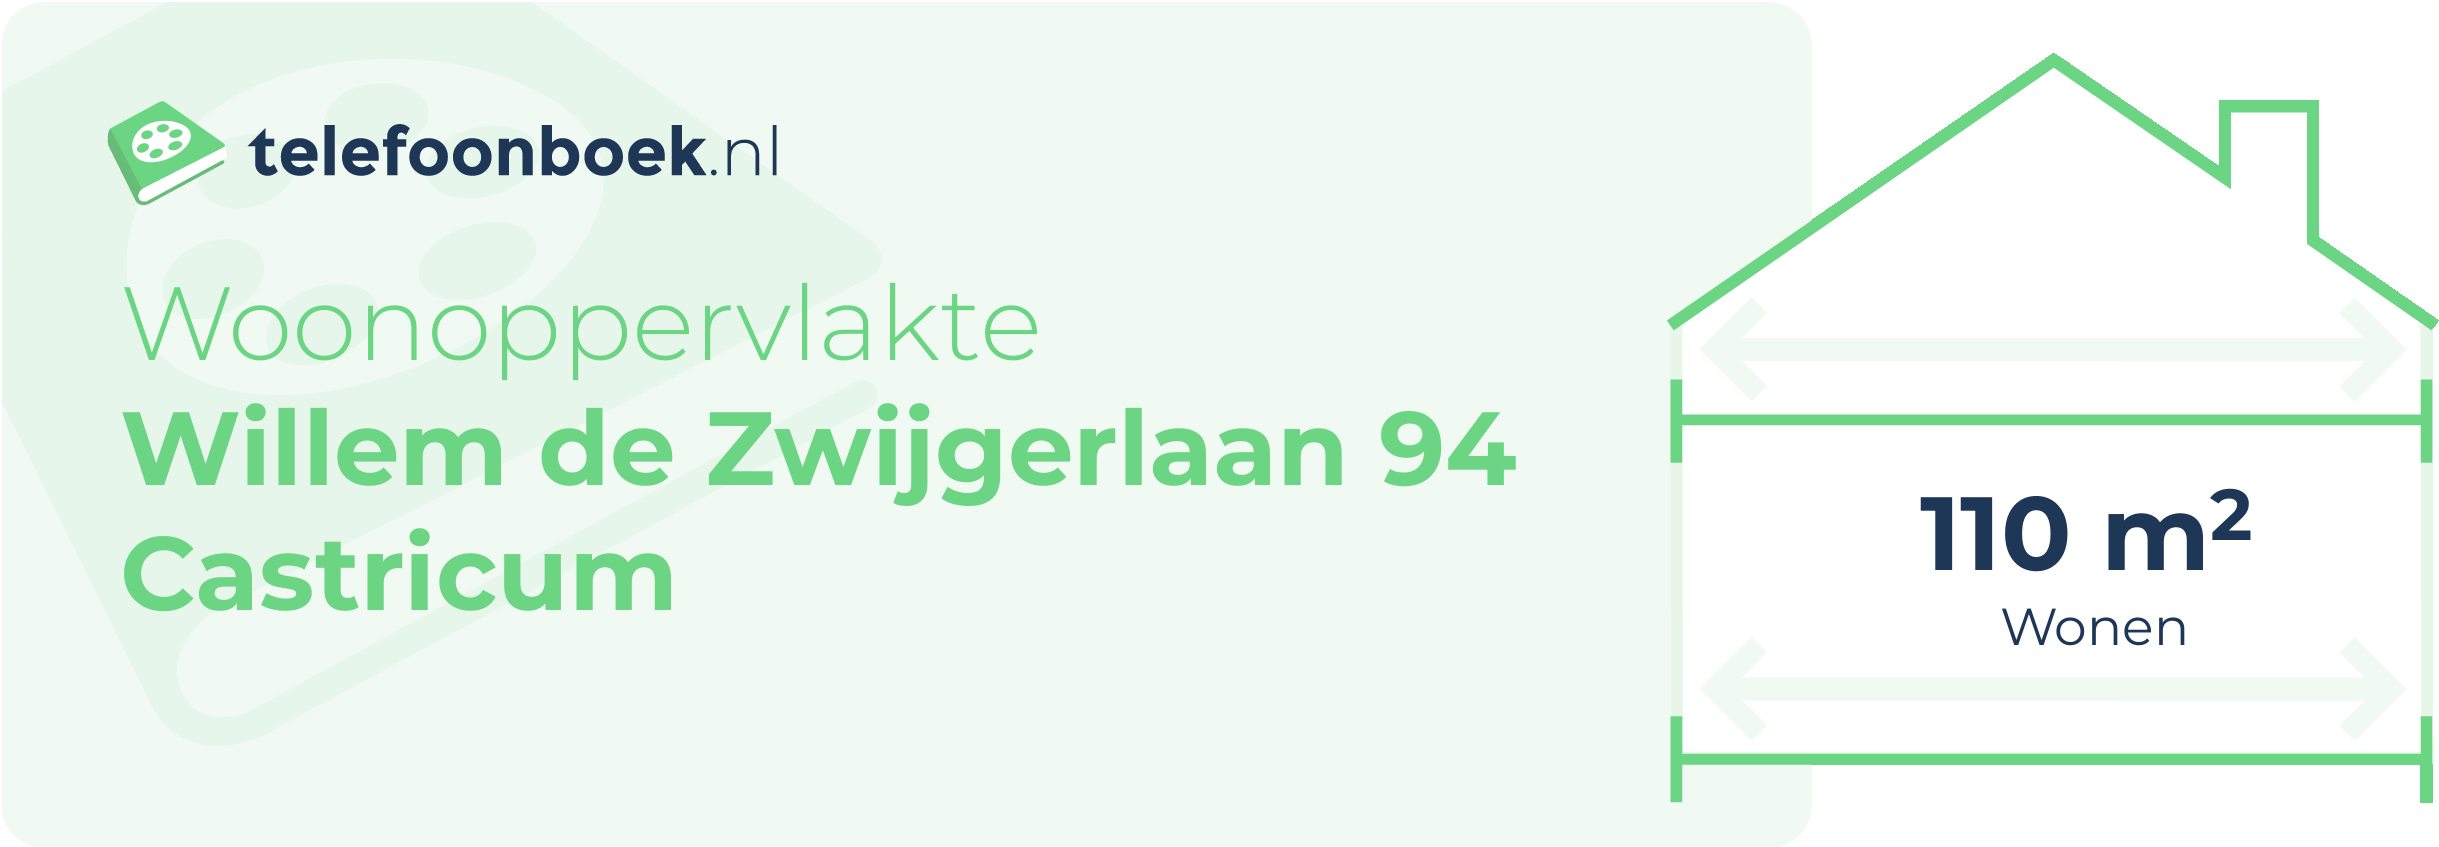 Woonoppervlakte Willem De Zwijgerlaan 94 Castricum